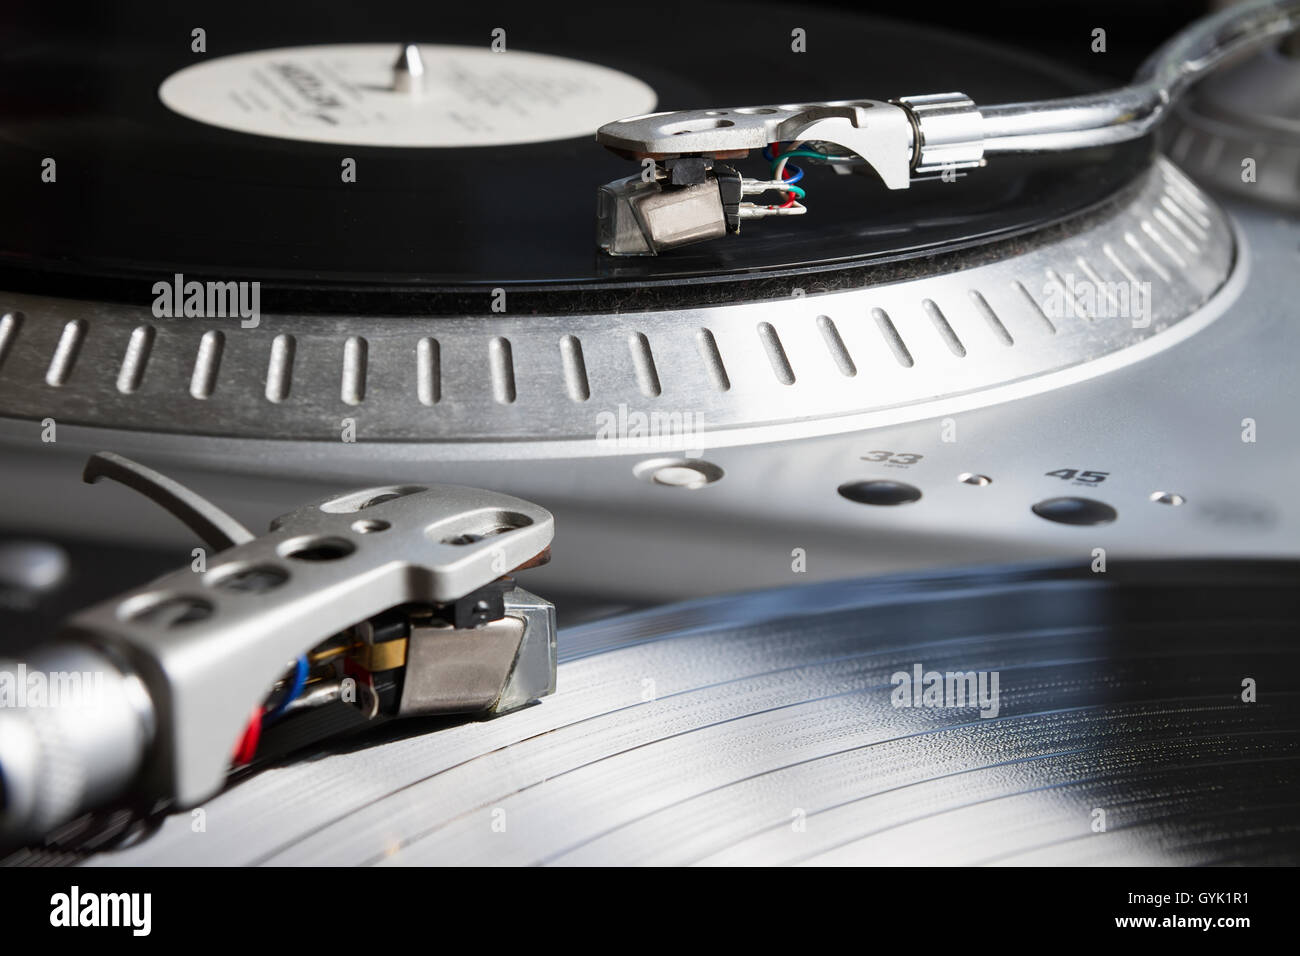 Plattenspieler Vinyl-Schallplatte mit Musik zu spielen. Nützliche Ausrüstung für DJ, Diskothek und Retro-Hipster-Thema oder Audio-Enthusiasten. Stockfoto